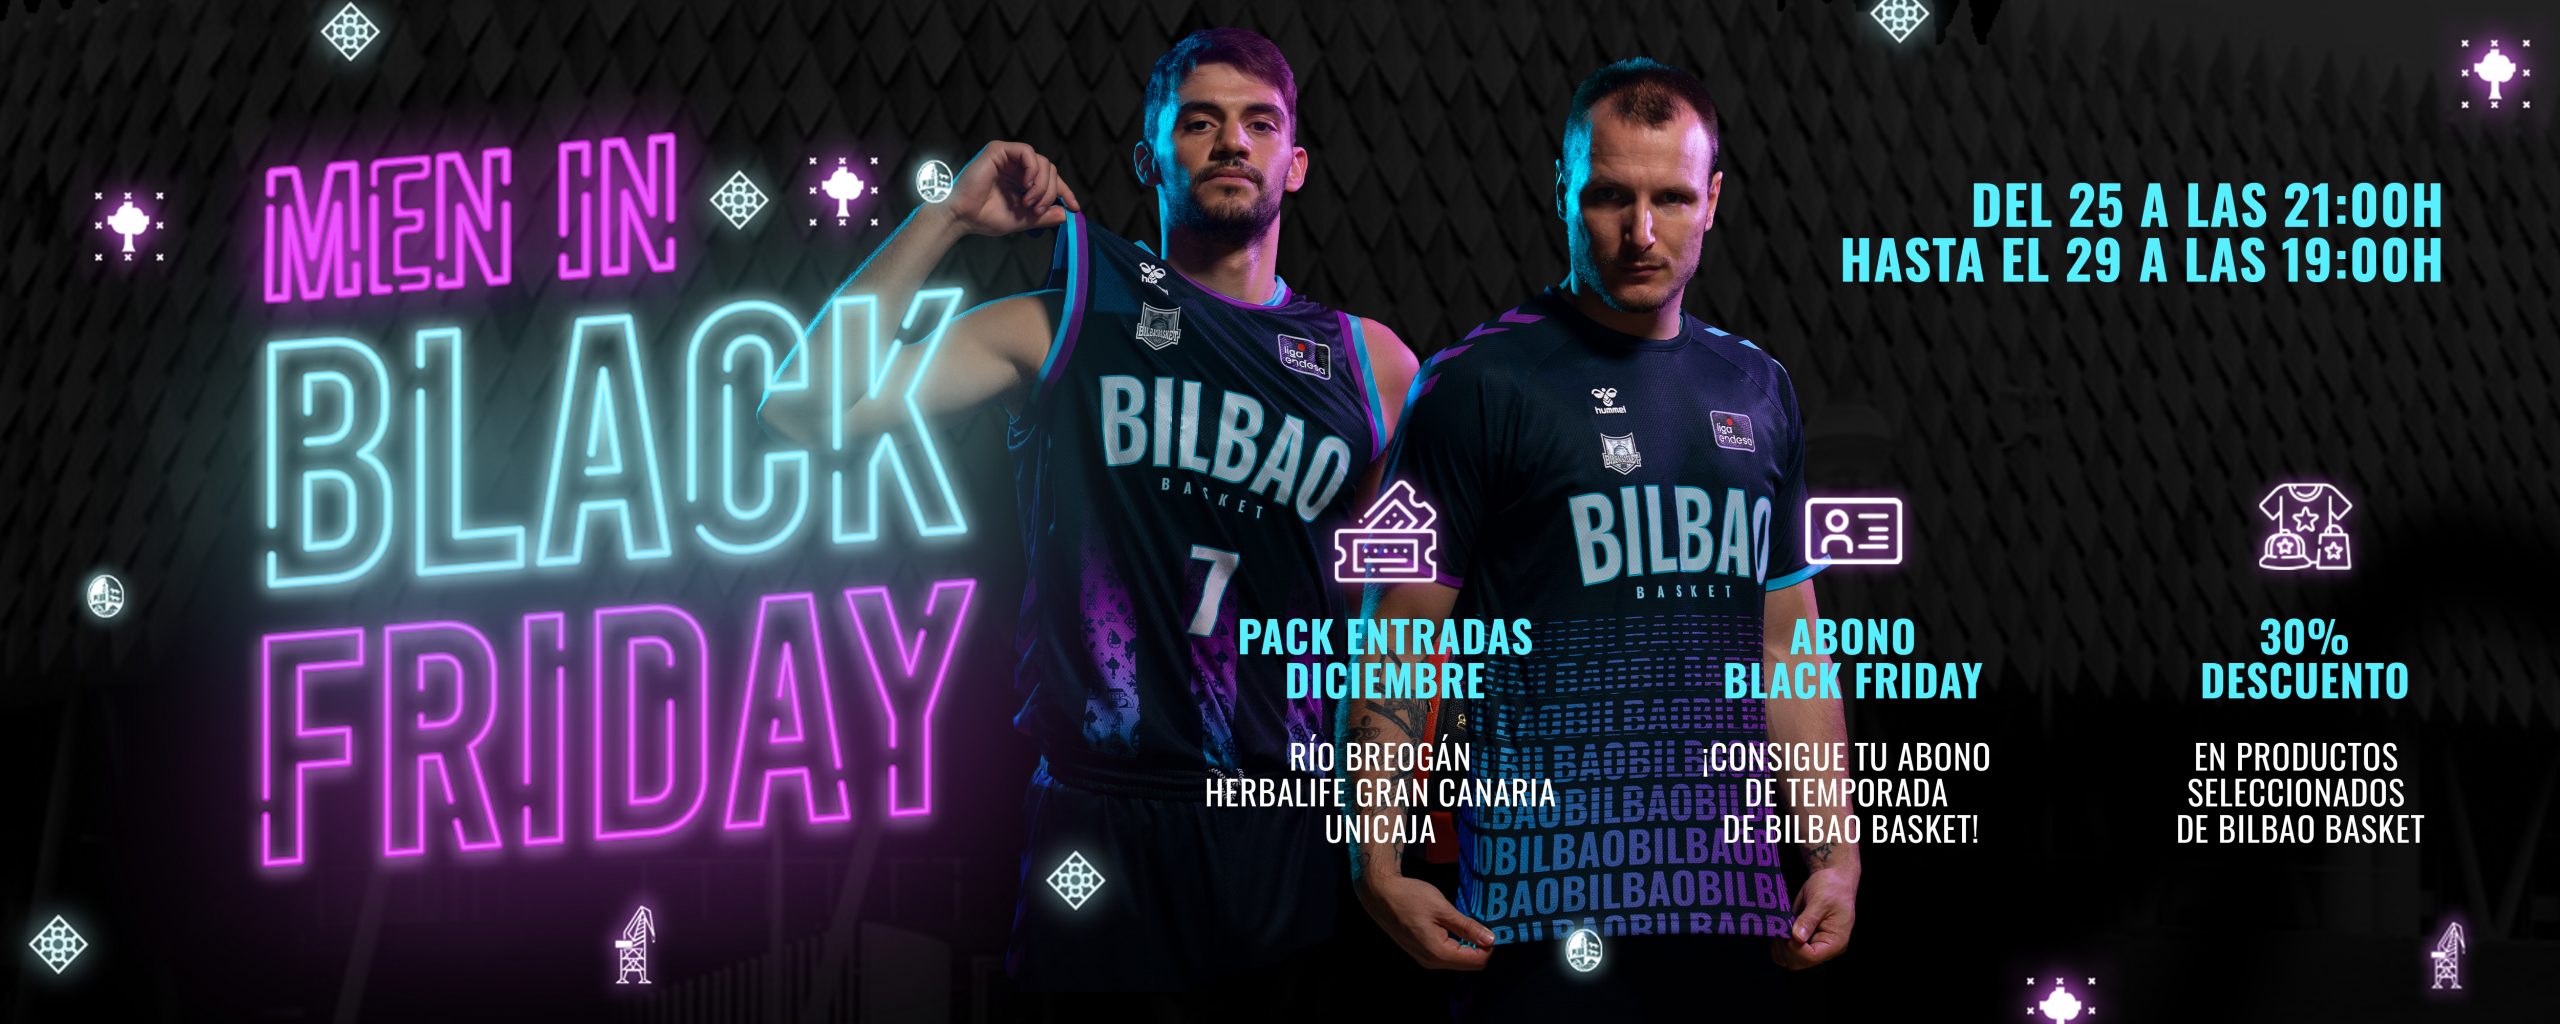 Pebish violín quemar Ya es Men In Black Friday en Bilbao Basket! - Bilbao Basket